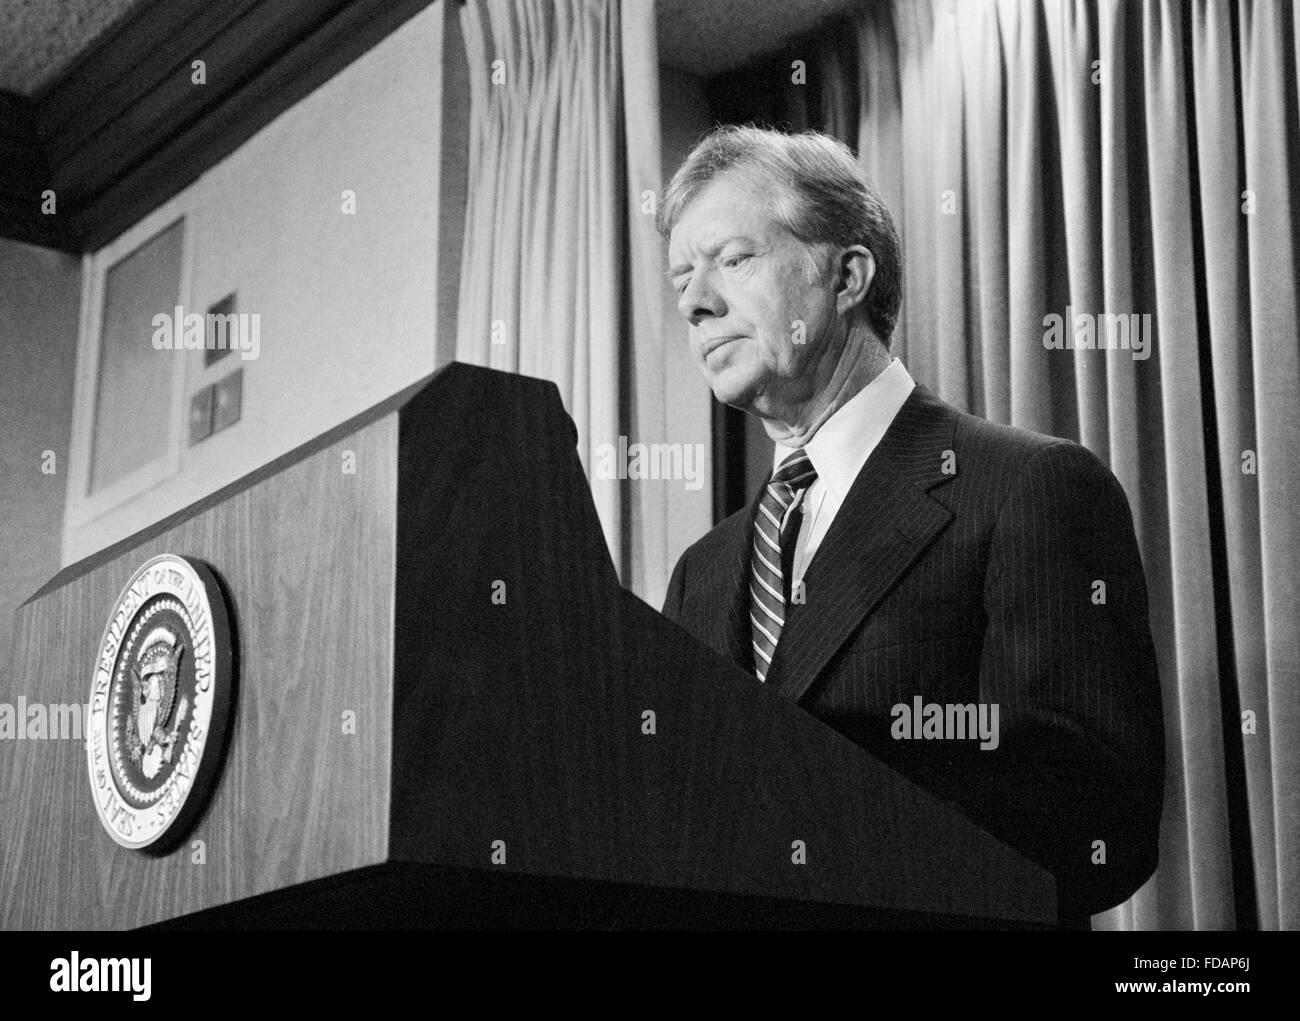 Jimmy Carter, 39e Président des Etats-Unis, s'adressant à la presse en avril 1980 Banque D'Images